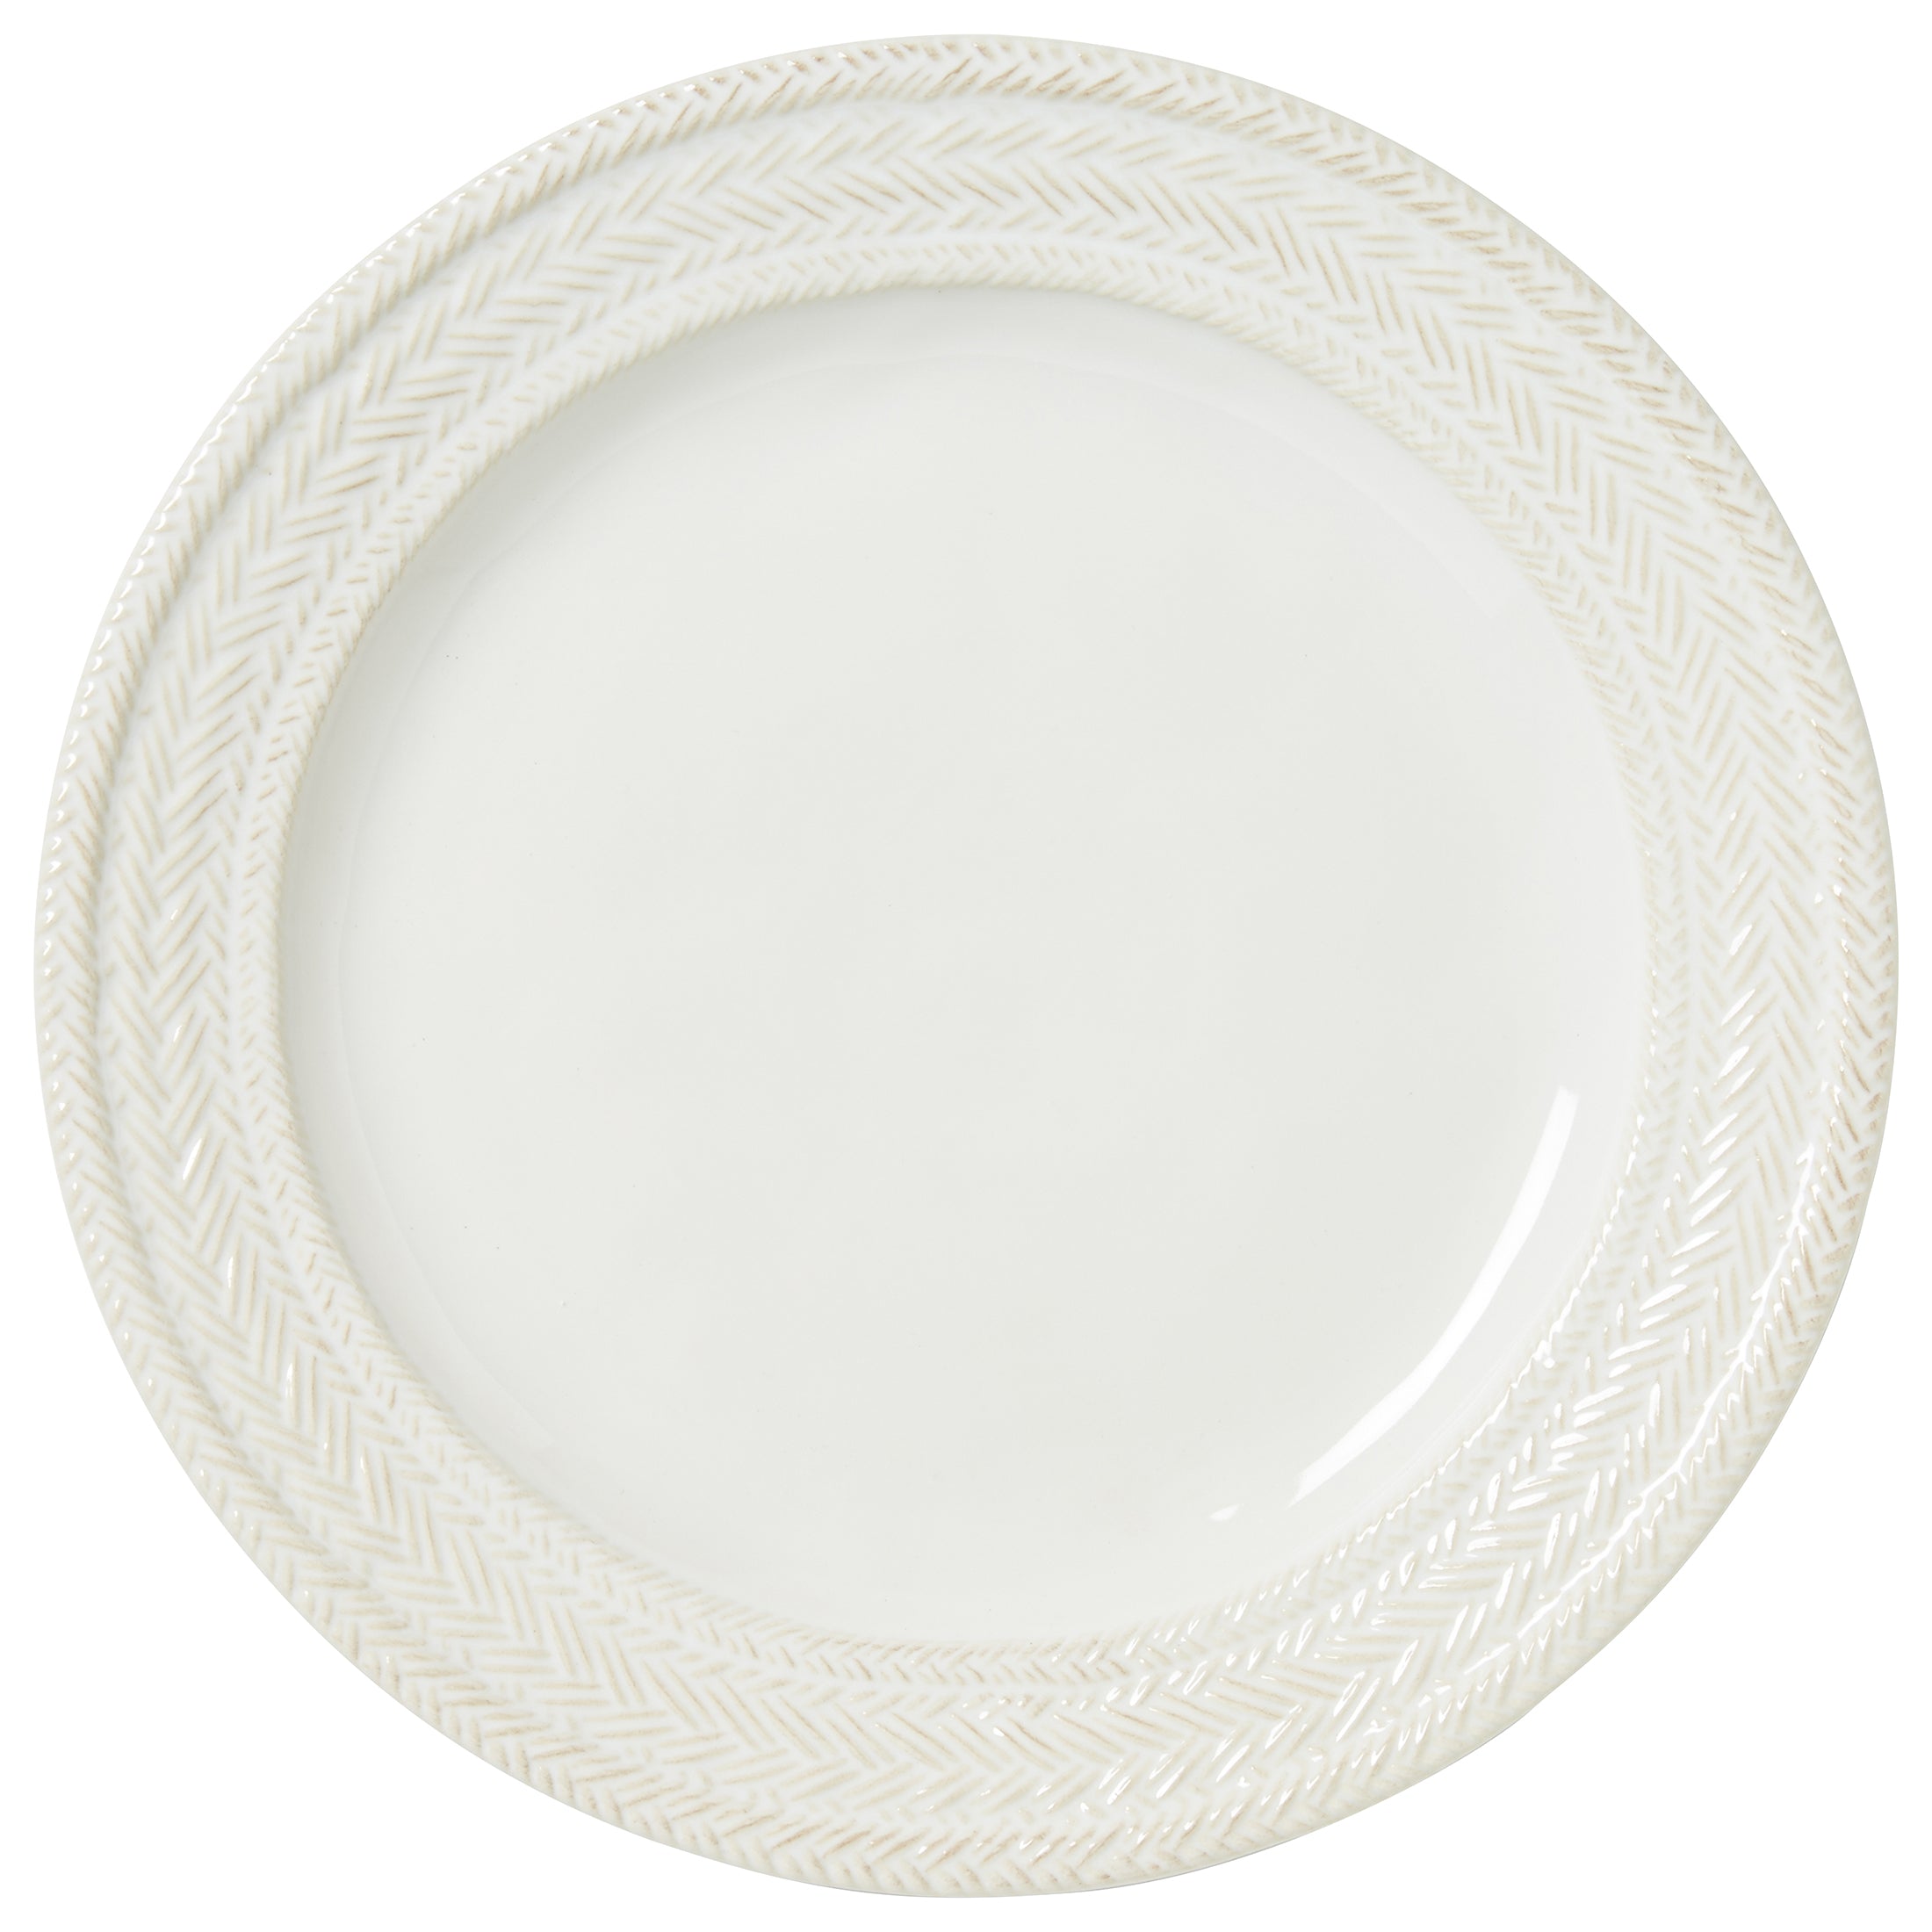 Juliska Le Panier Whitewash Dinner Plate